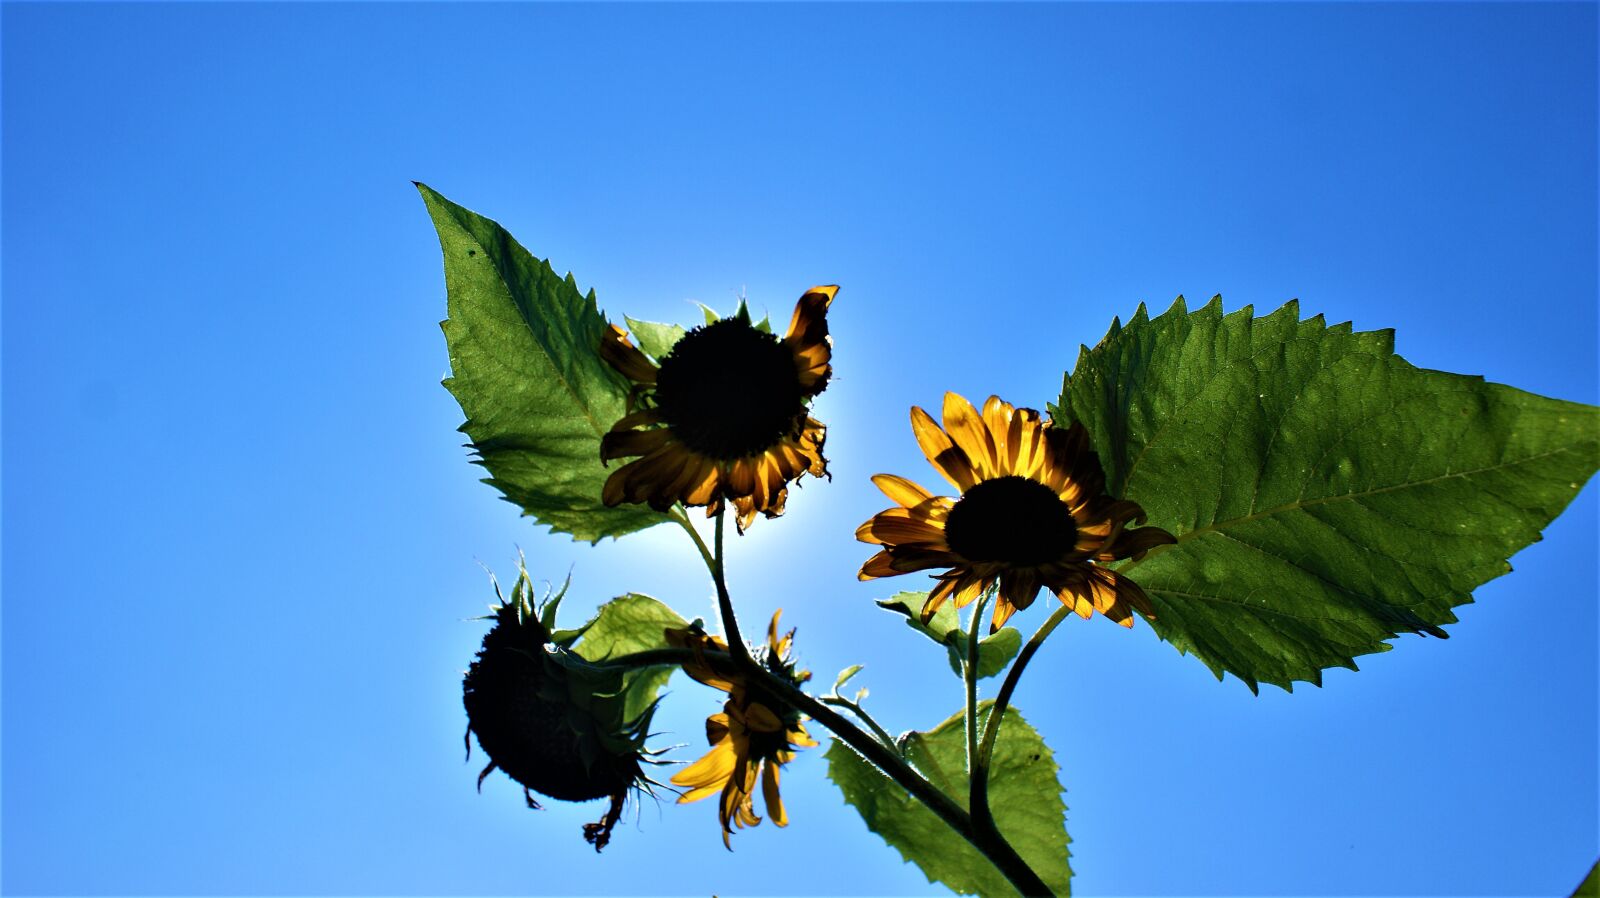 Sony Alpha DSLR-A350 sample photo. Sunflower, sun, sunny photography